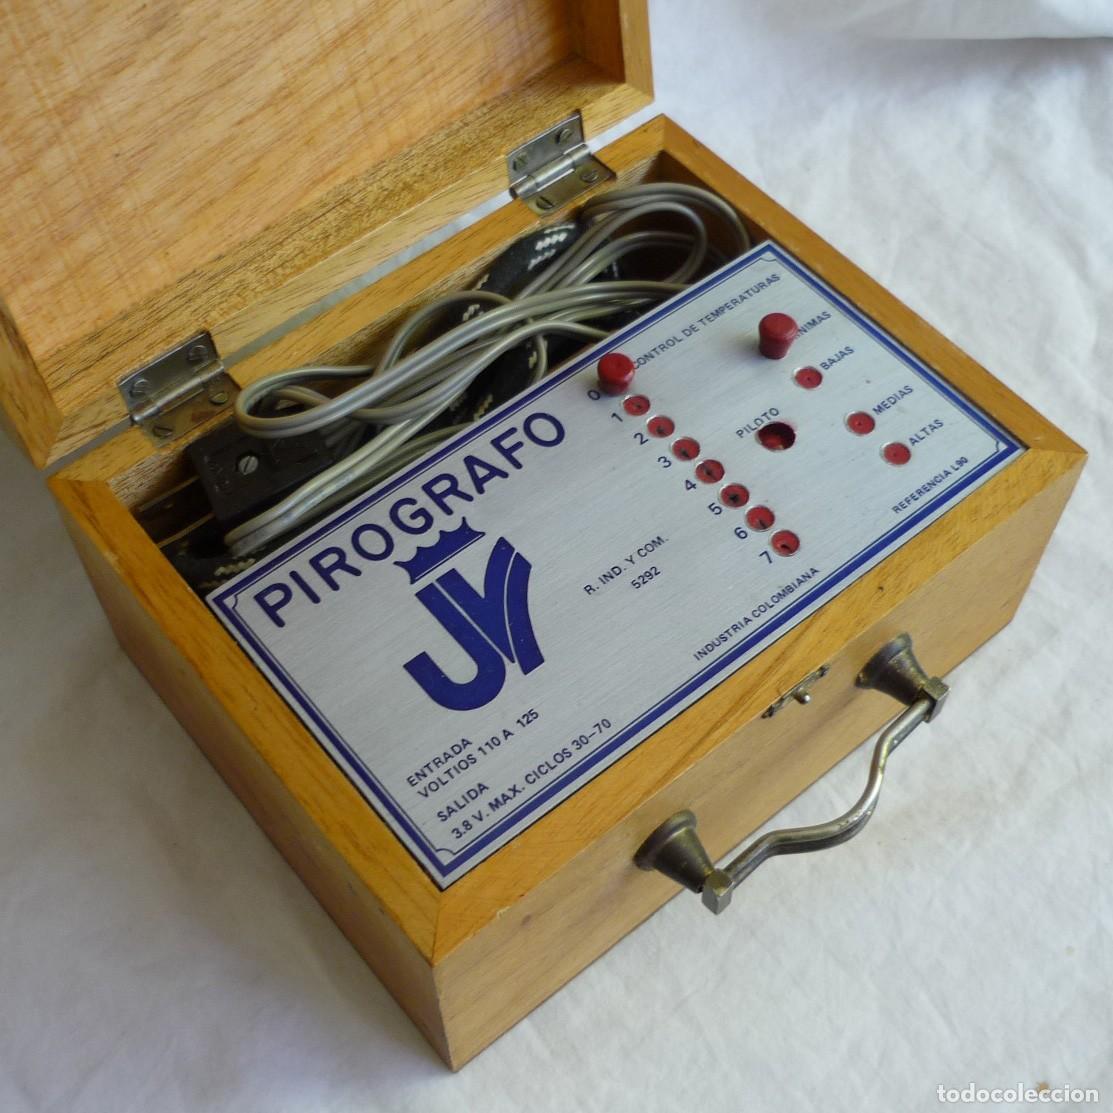 pirógrafo para grabar madera, en caja, funciona - Compra venta en  todocoleccion